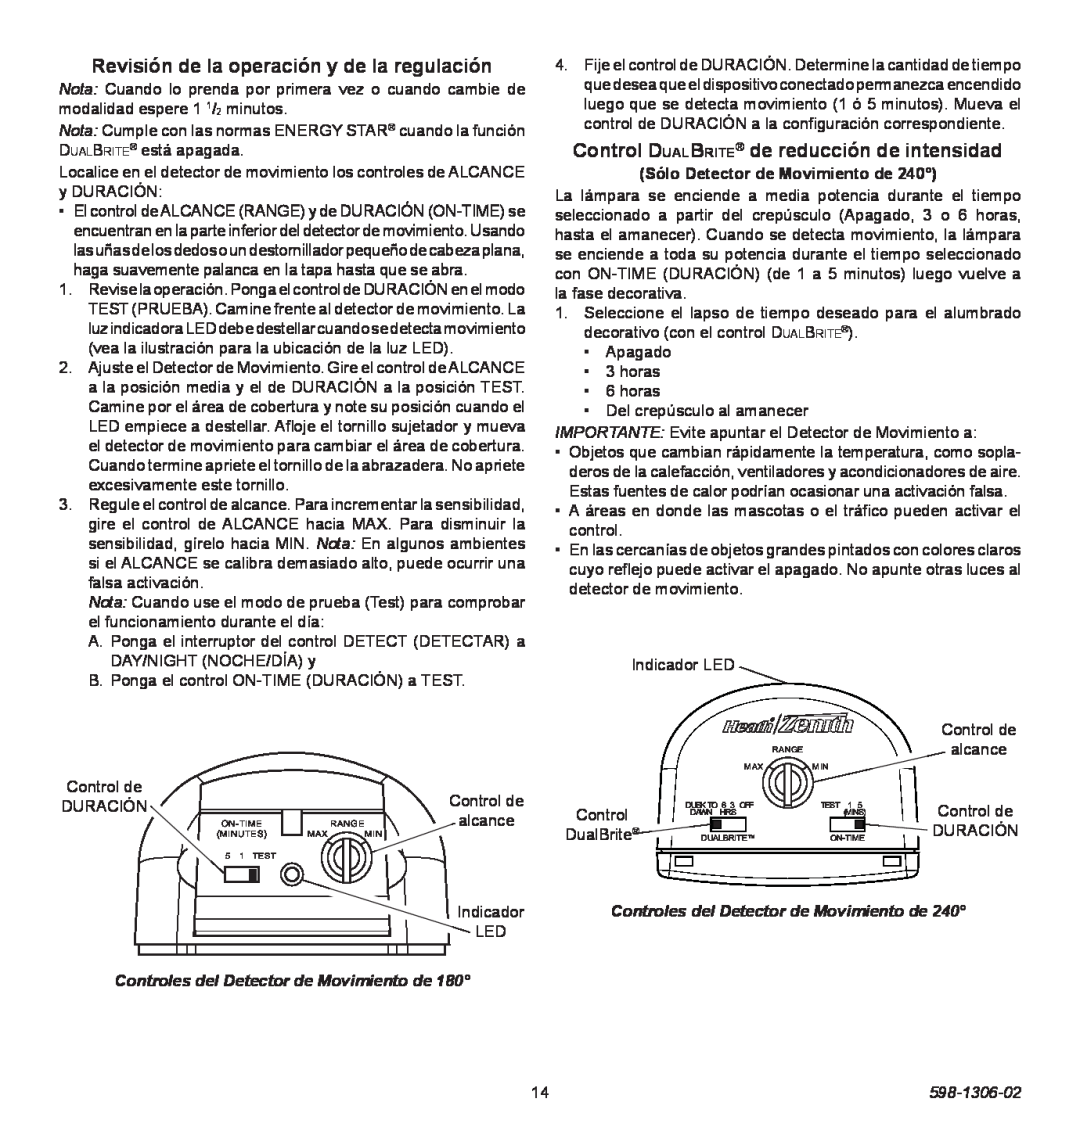 Heath Zenith 598-1306-02 manual Revisión de la operación y de la regulación, Control DualBrite de reducción de intensidad 